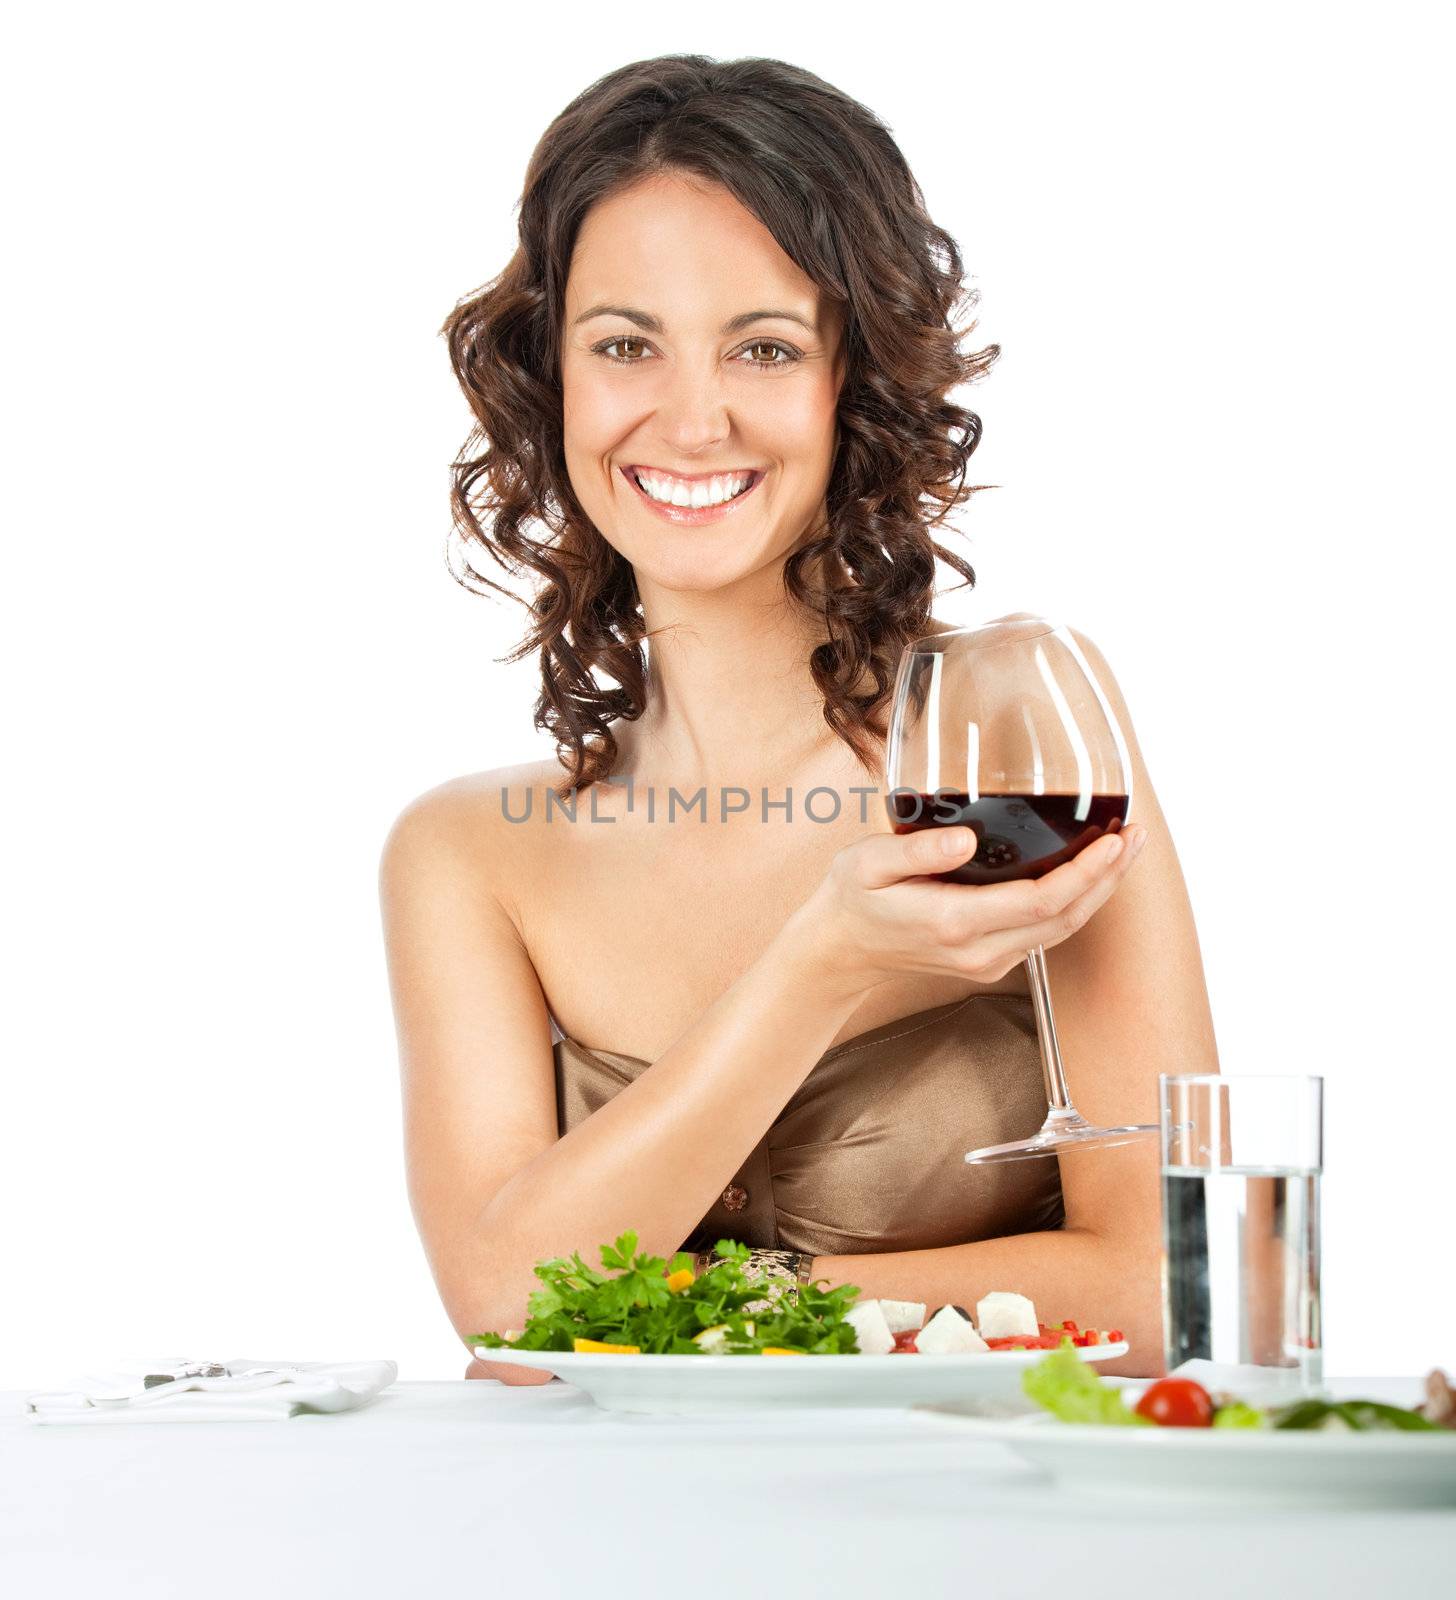 elegant female dining, holding glass of wine, isolated on white